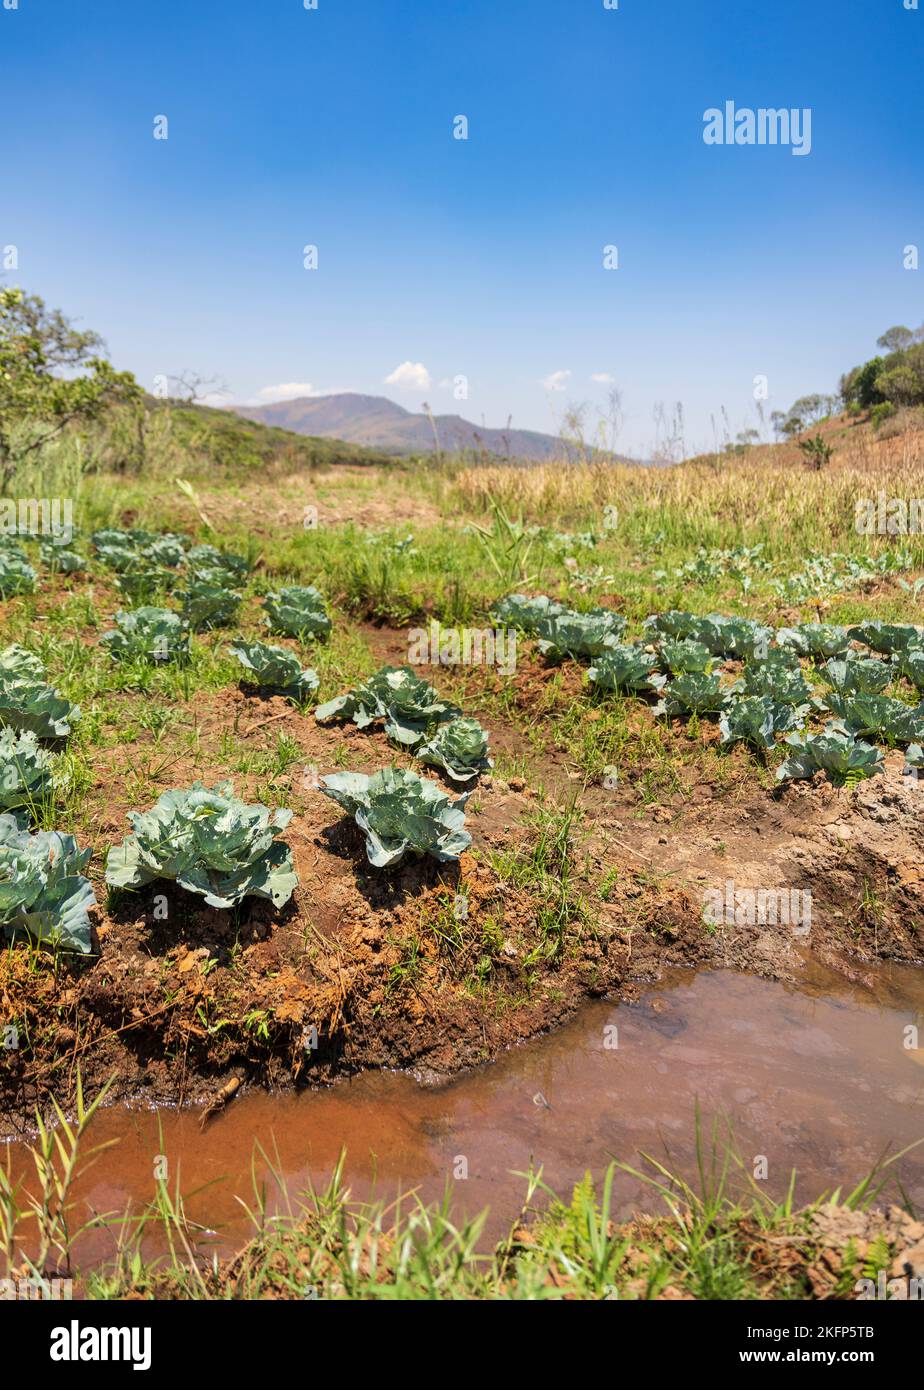 Agricoltura sostenibile in un dambo (zona umida) in fondo ad un bacino idrografico nel distretto di Nkhata Bay, Malawi Foto Stock